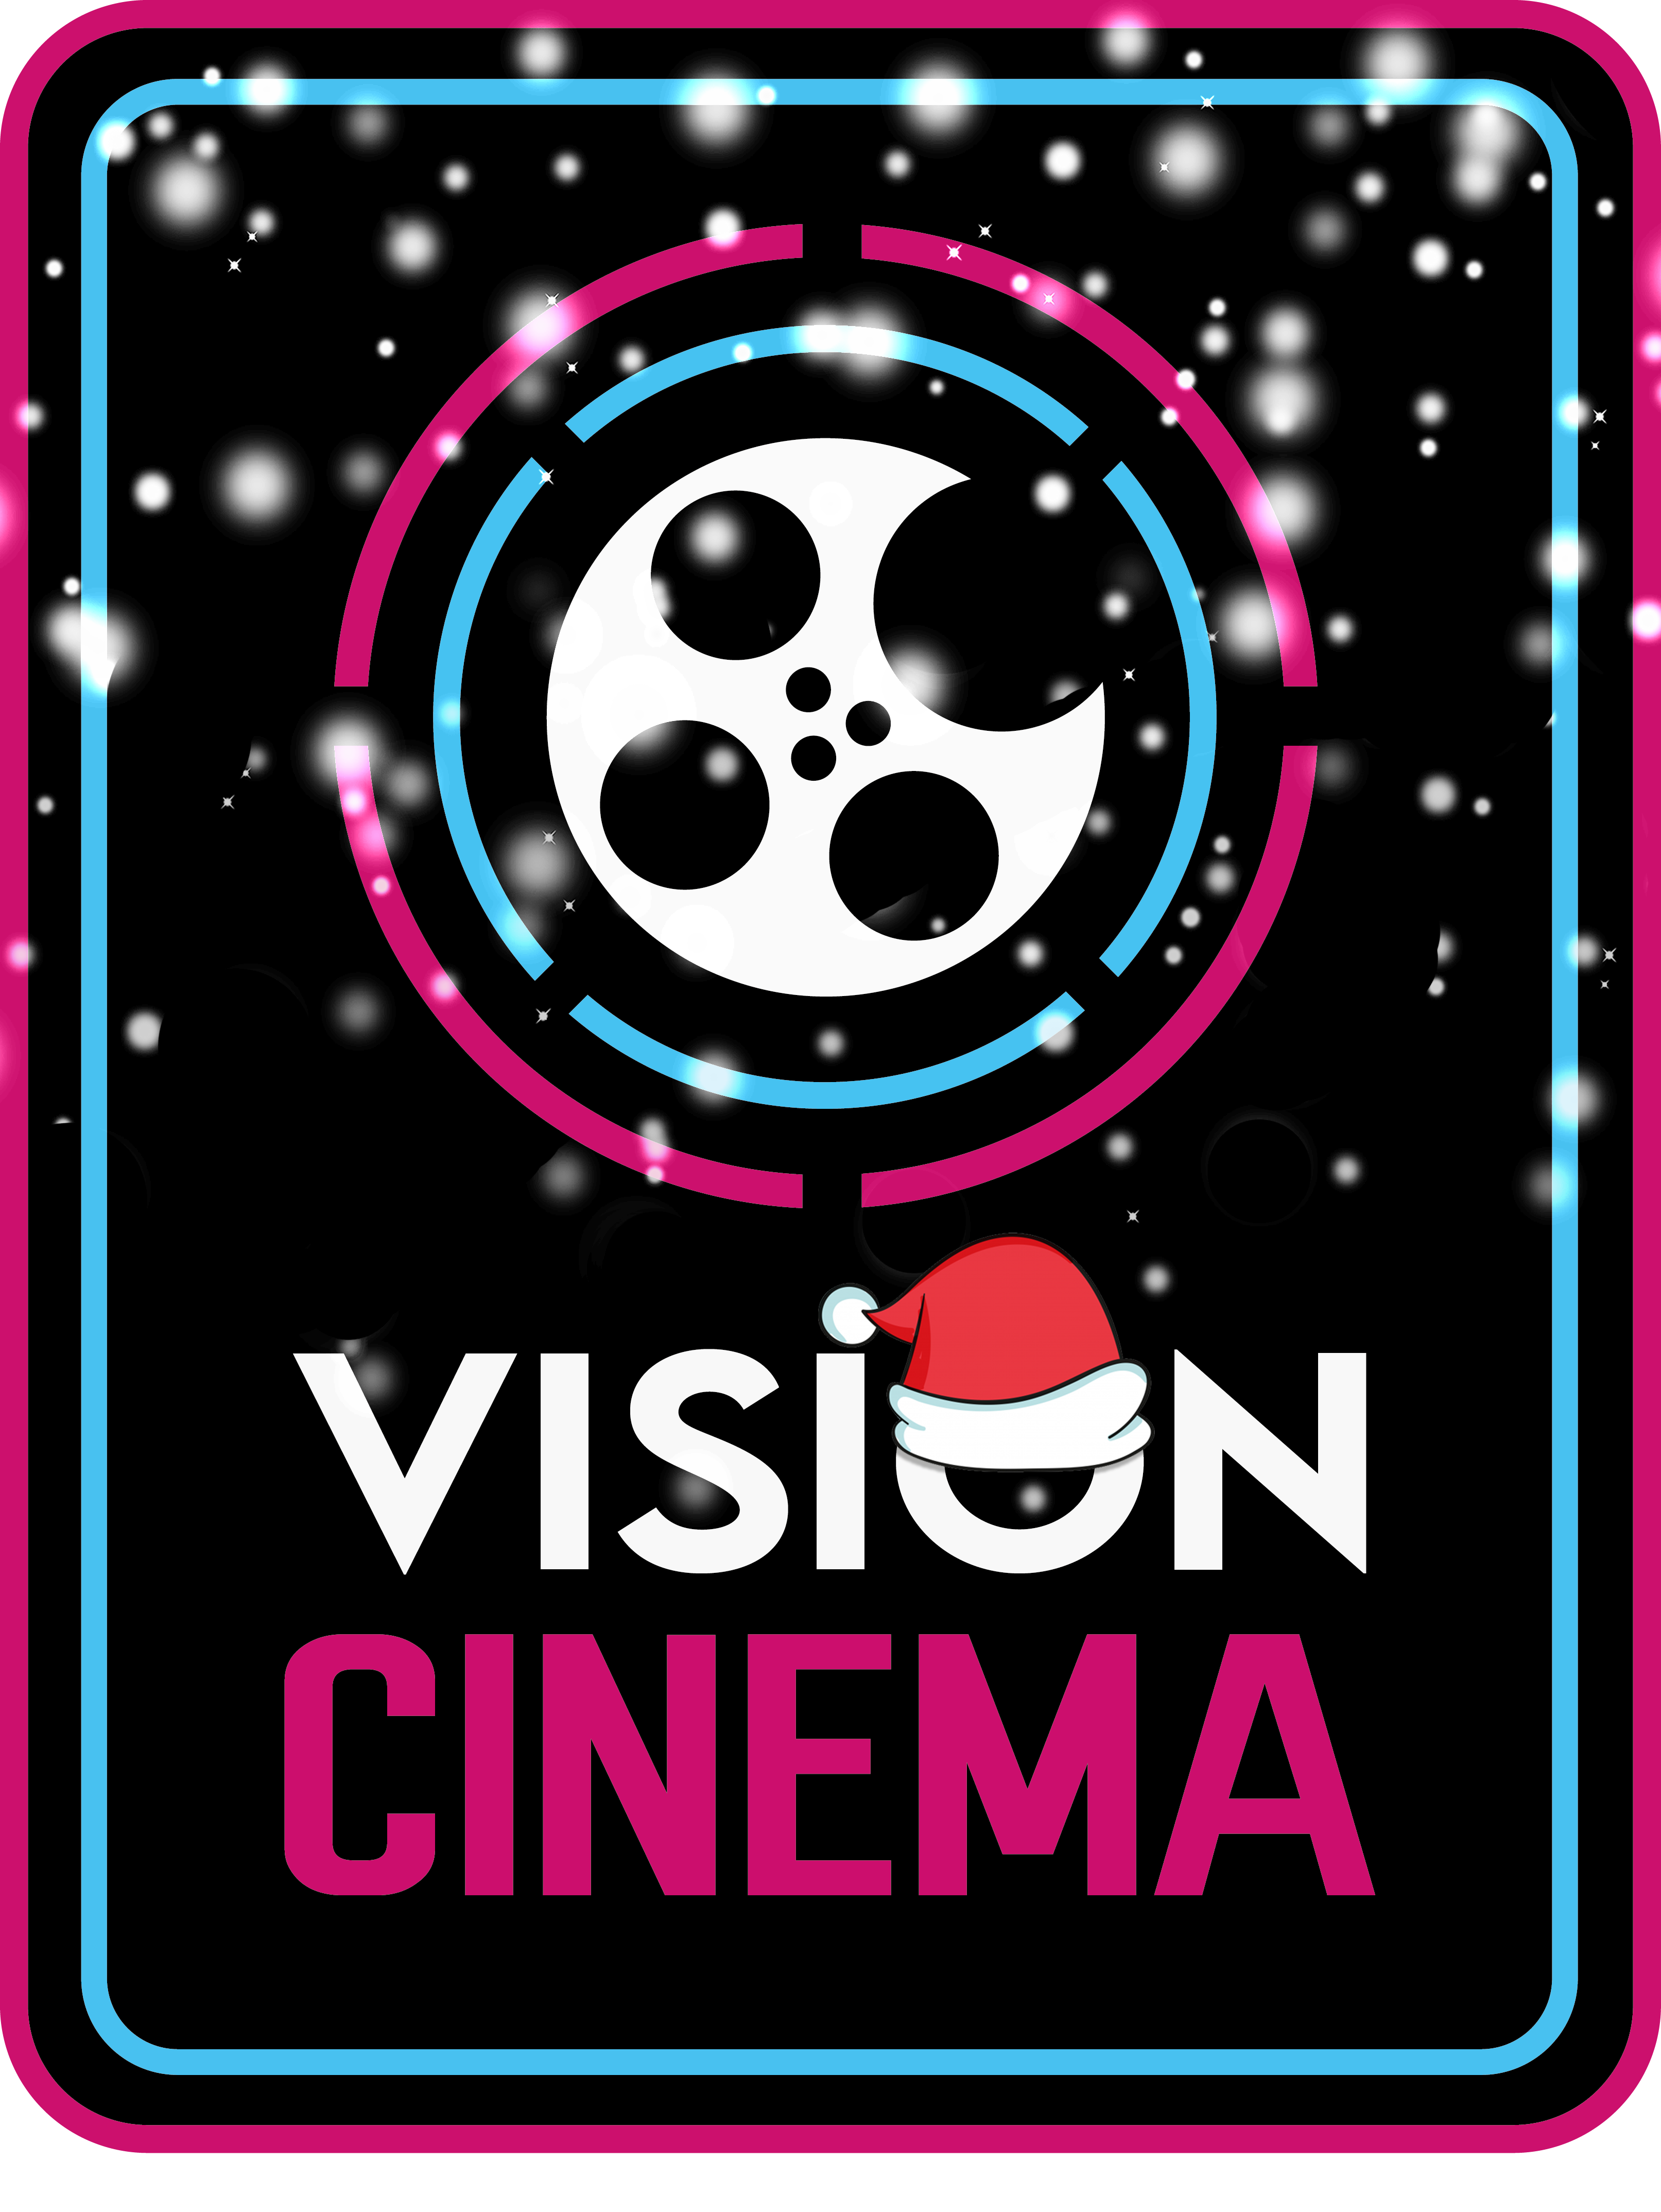 Cinema Vision